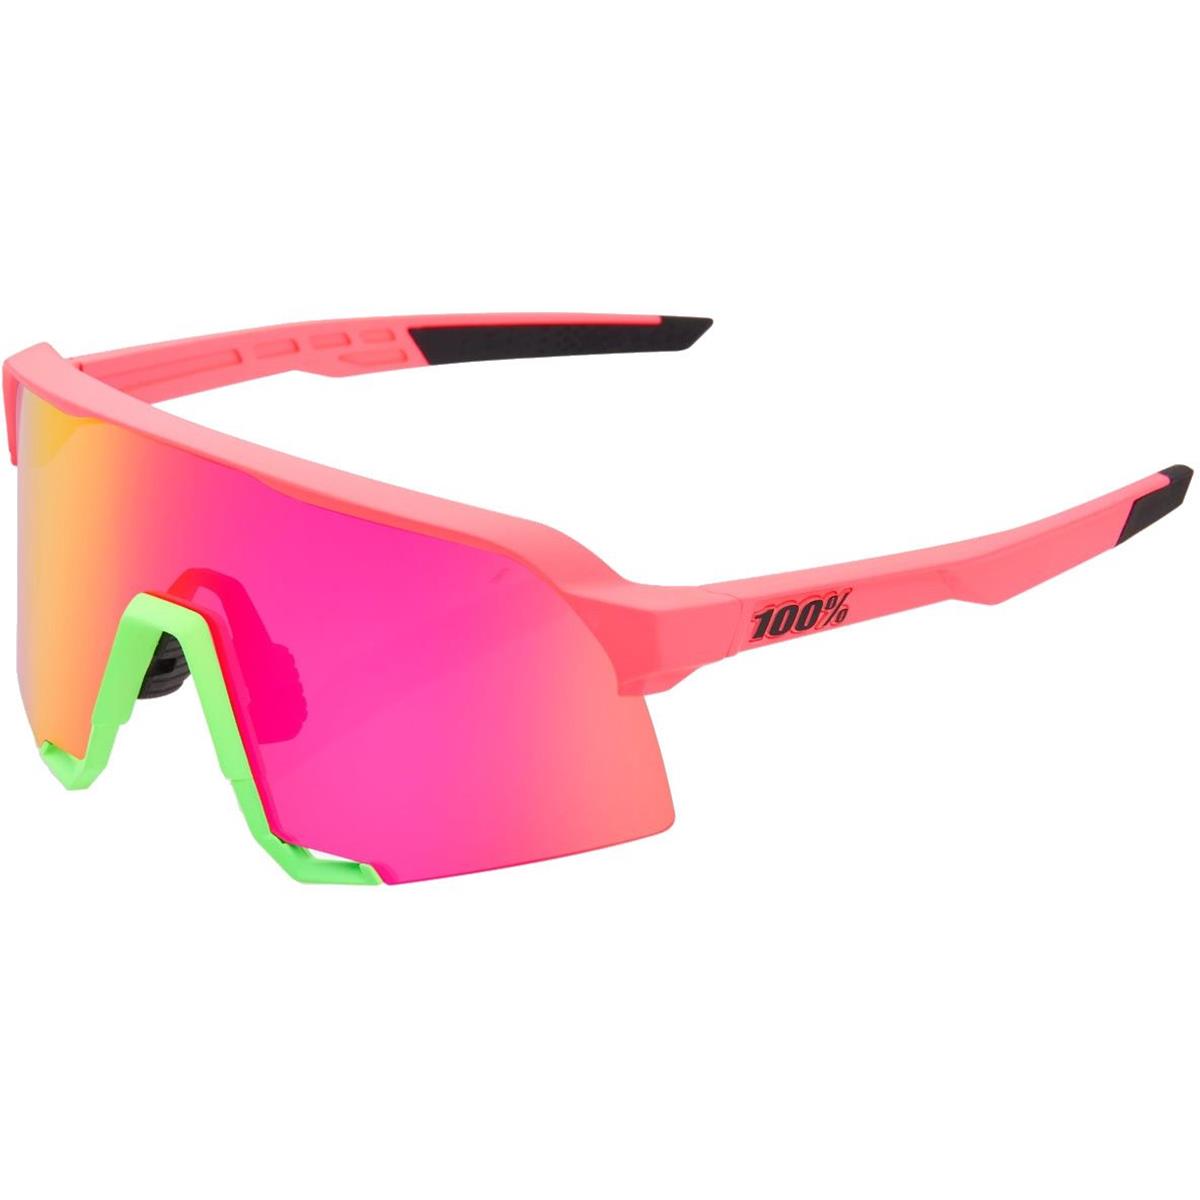 100% MTB-Sportbrille S3 Matte Washed Out Neon Pink - Verspiegelt